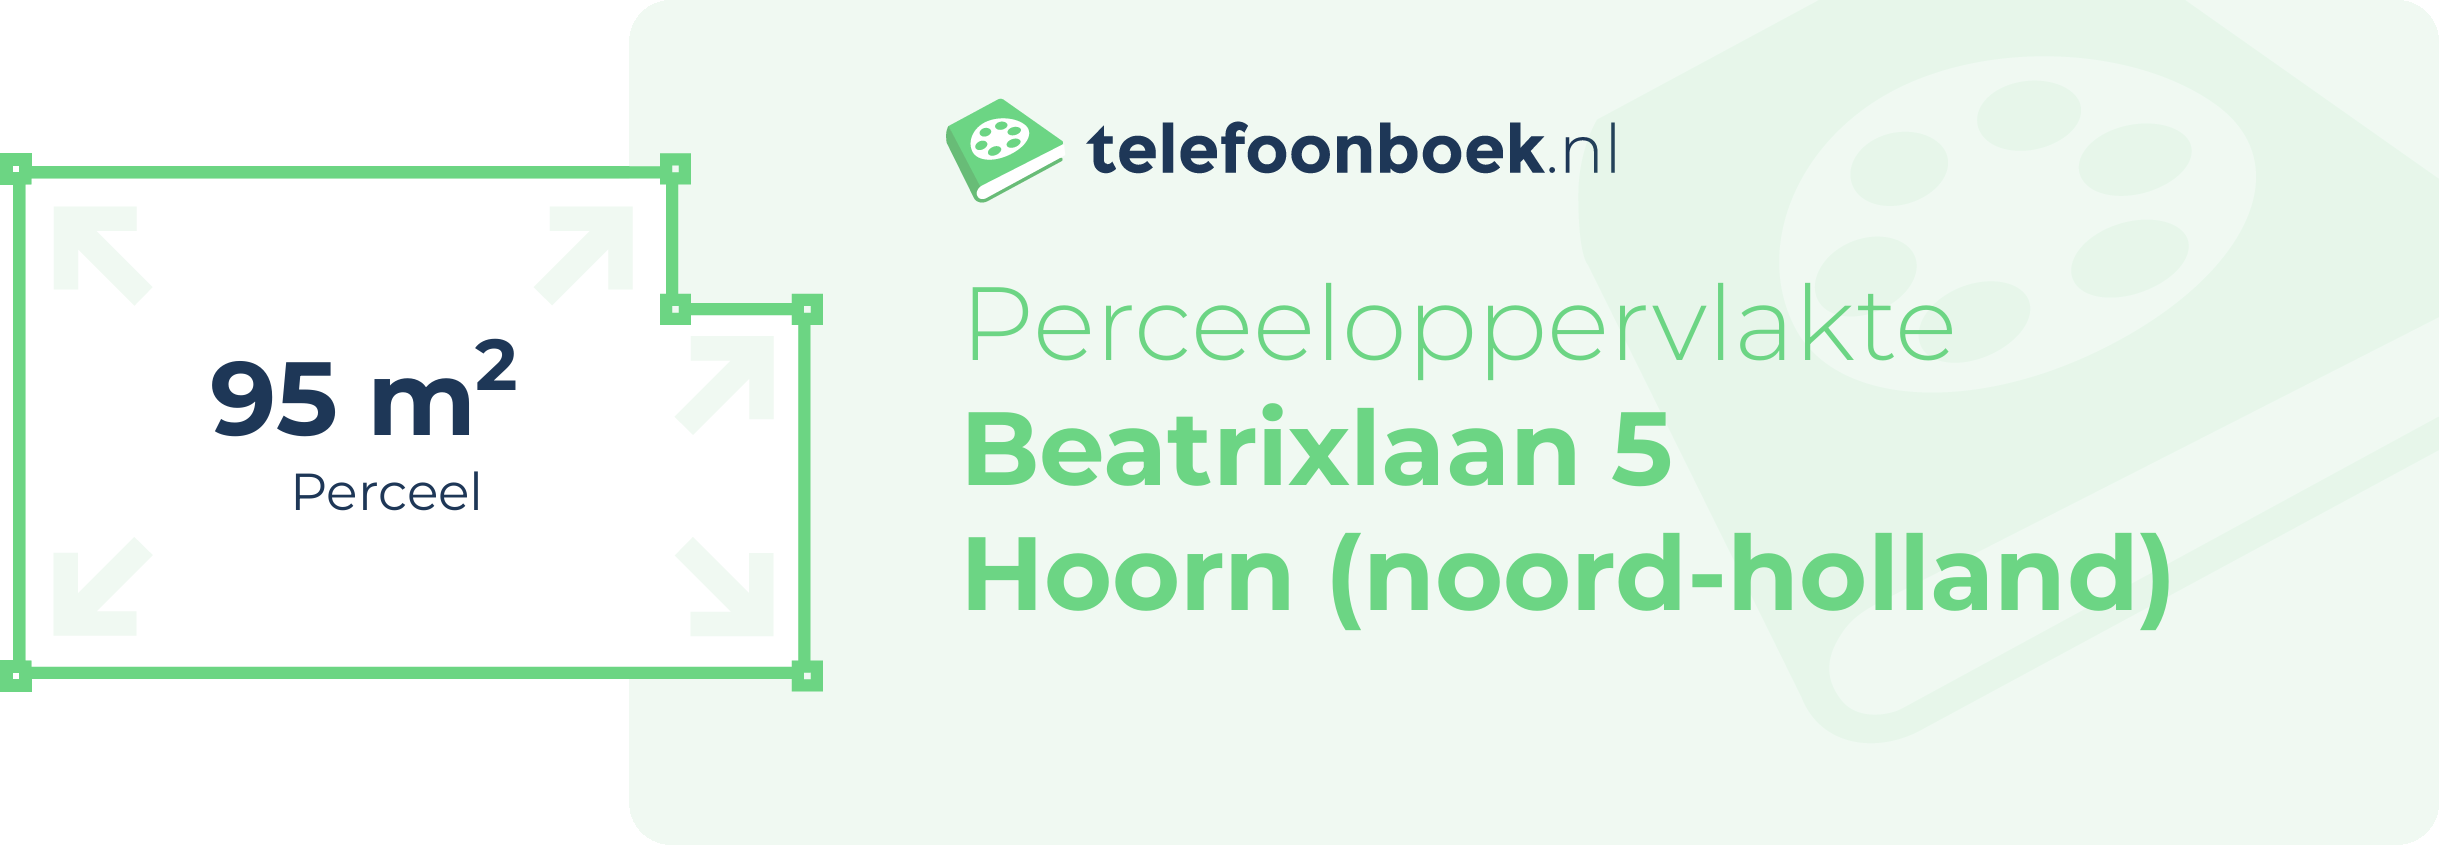 Perceeloppervlakte Beatrixlaan 5 Hoorn (Noord-Holland)